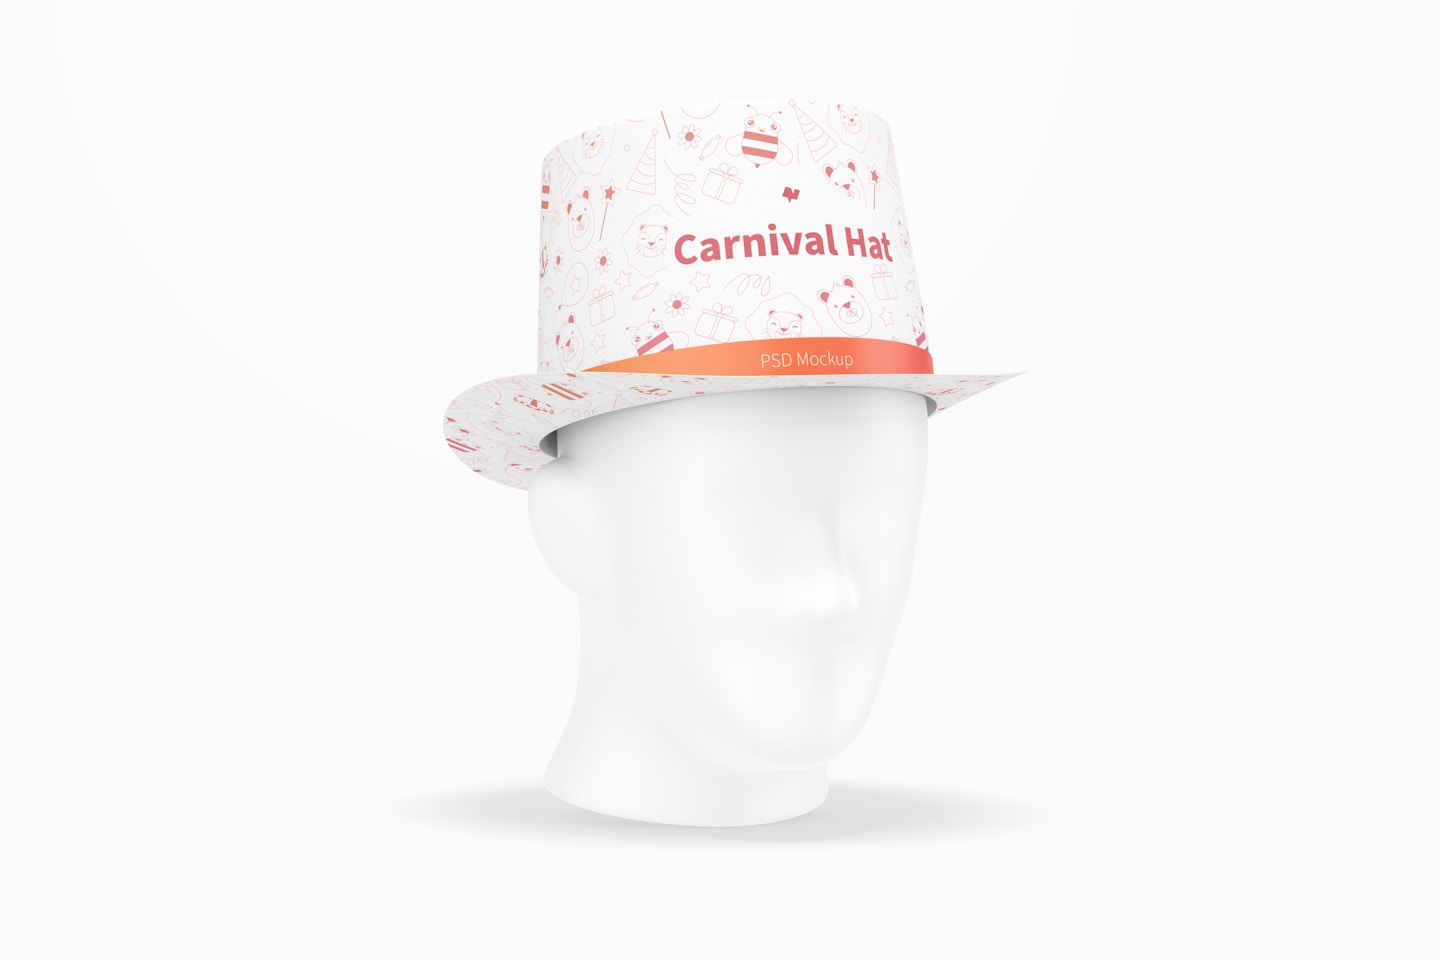 Carnival Hat Mockup